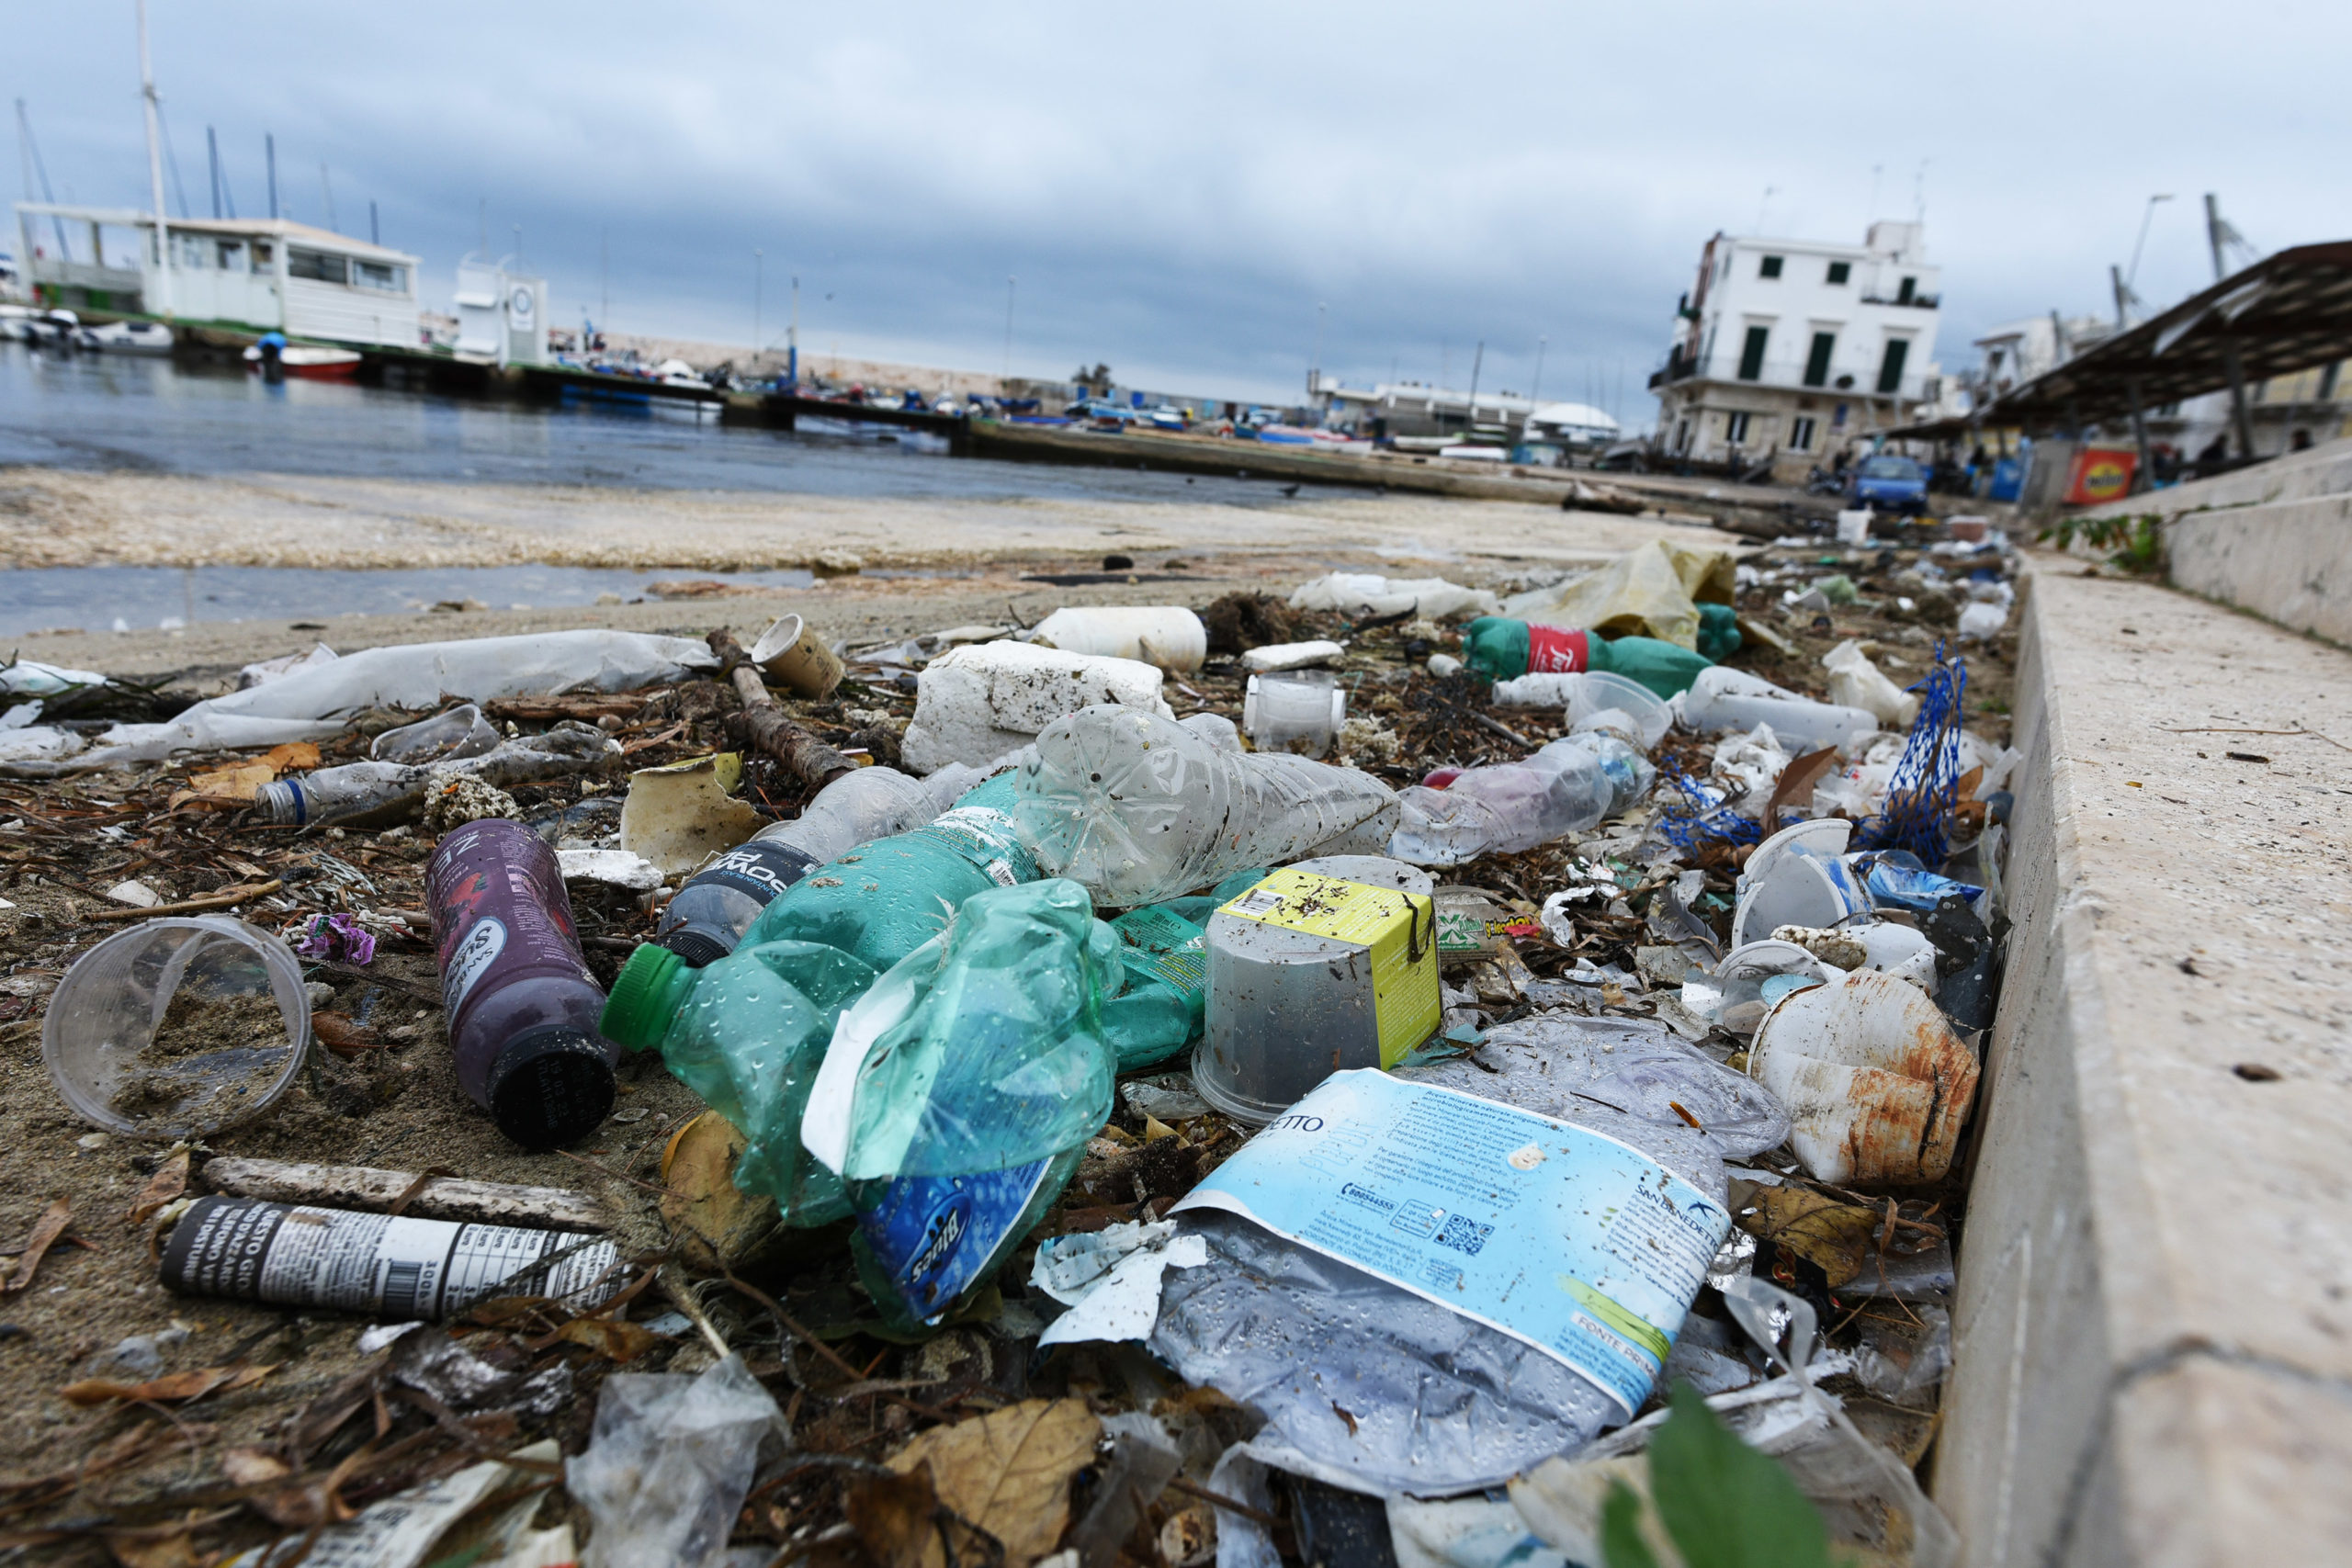 Sostenibilità: intesa tra Saipem e Quantafuel per riciclo plastica